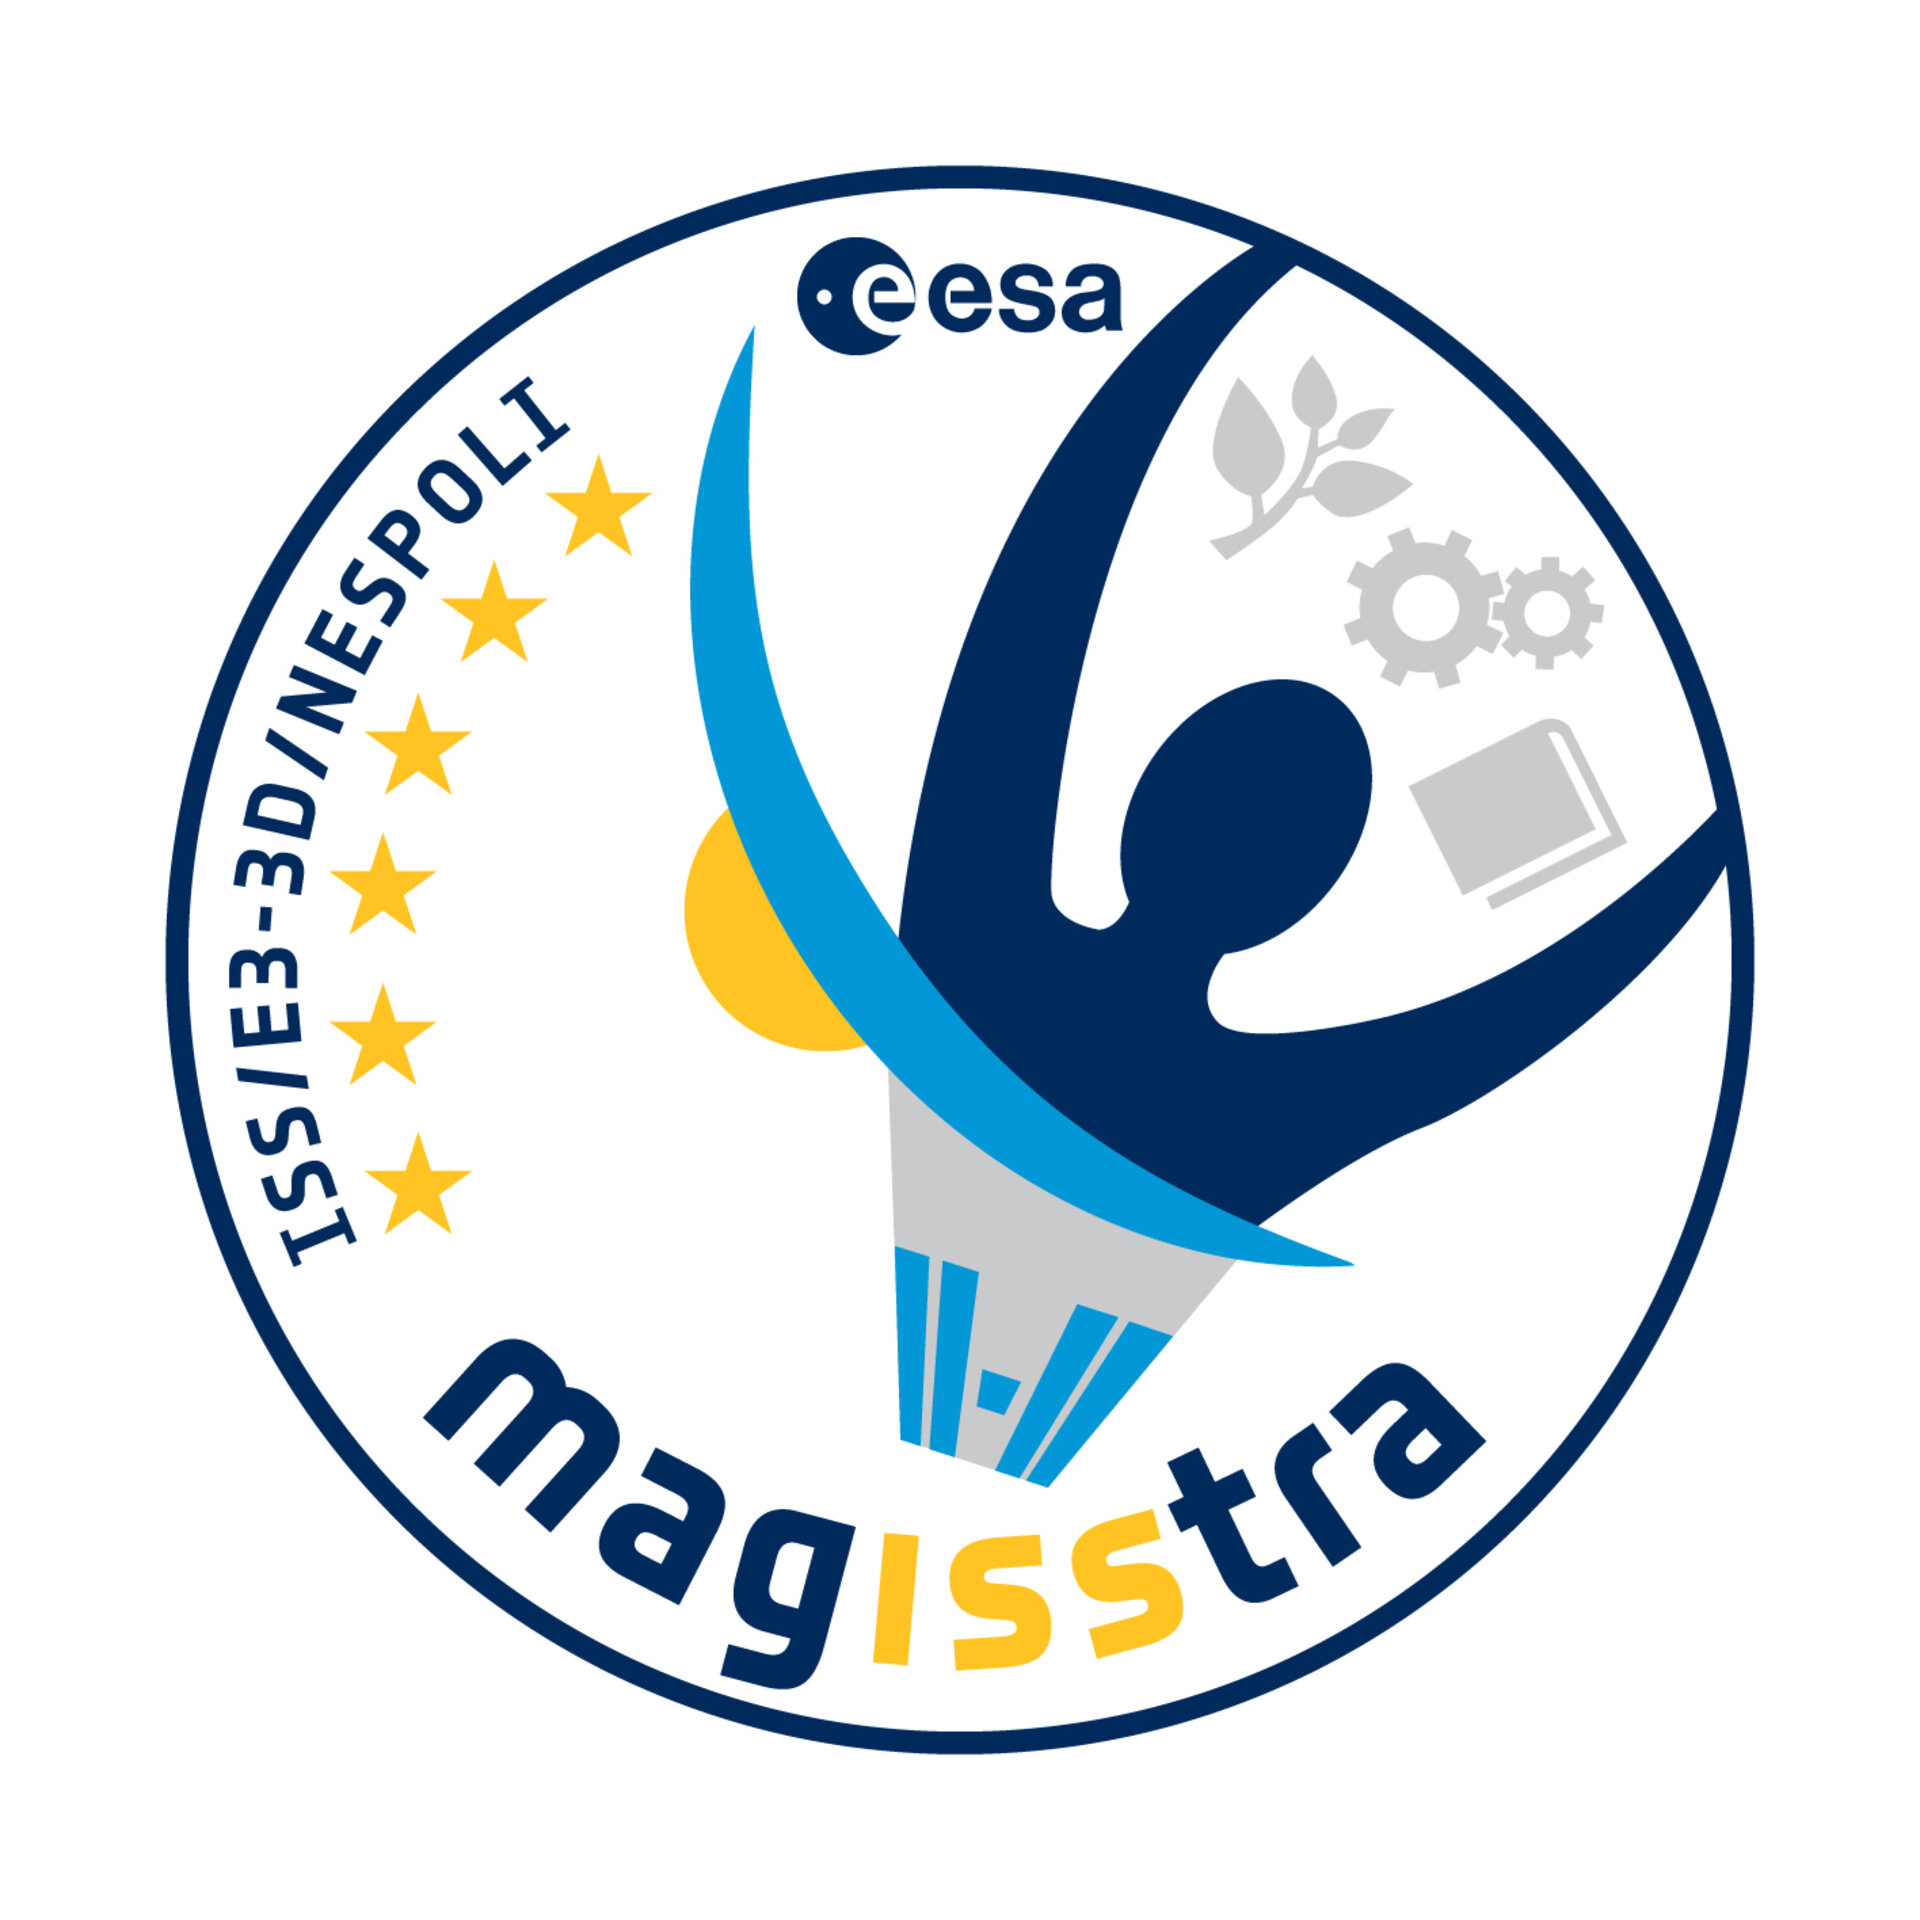 Il logo della missione MagISStra